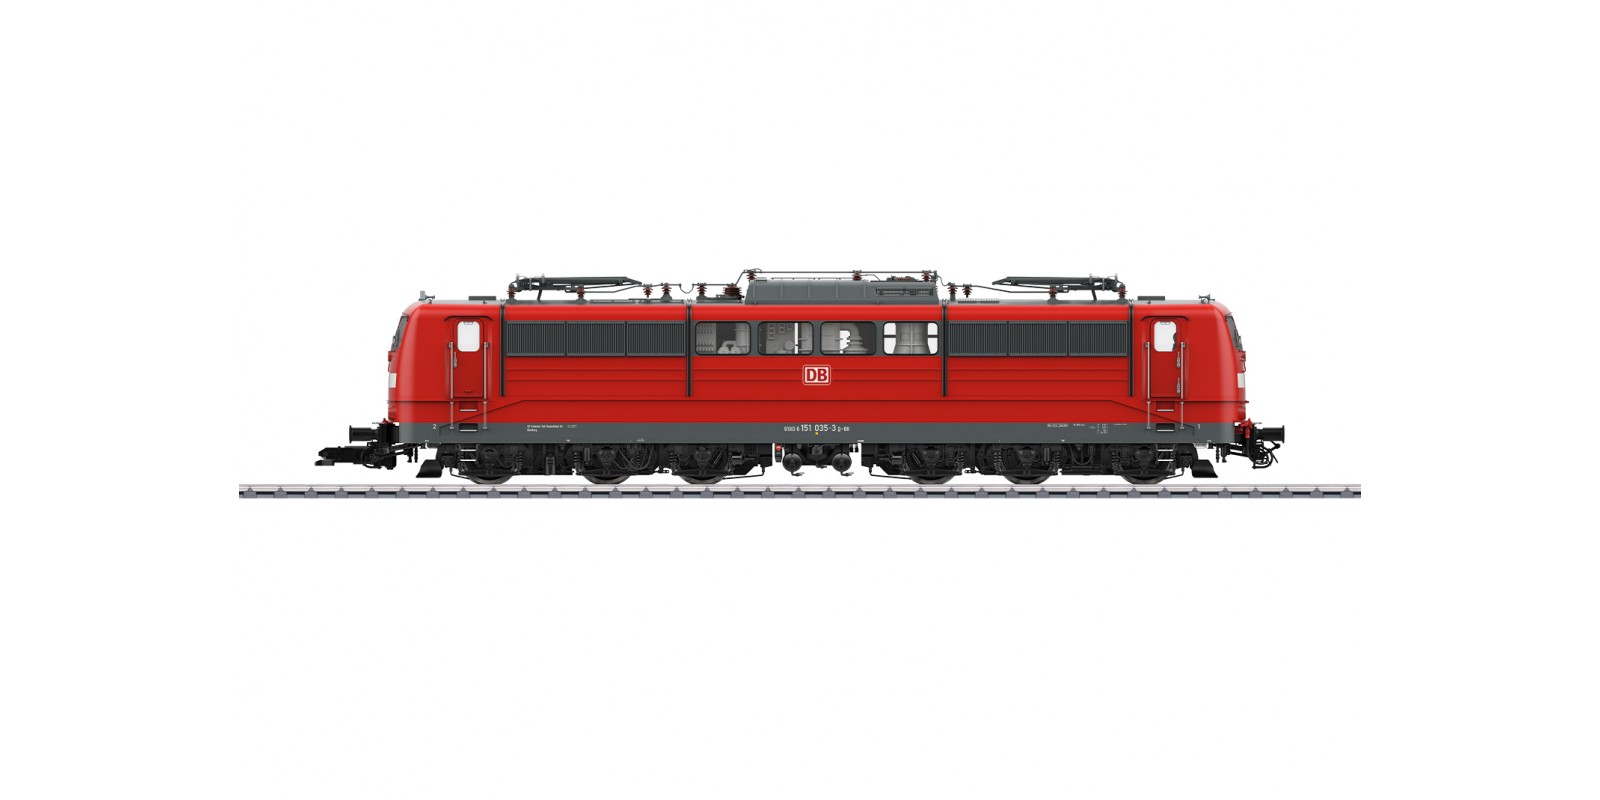 55256 Class 151 Electric Locomotive